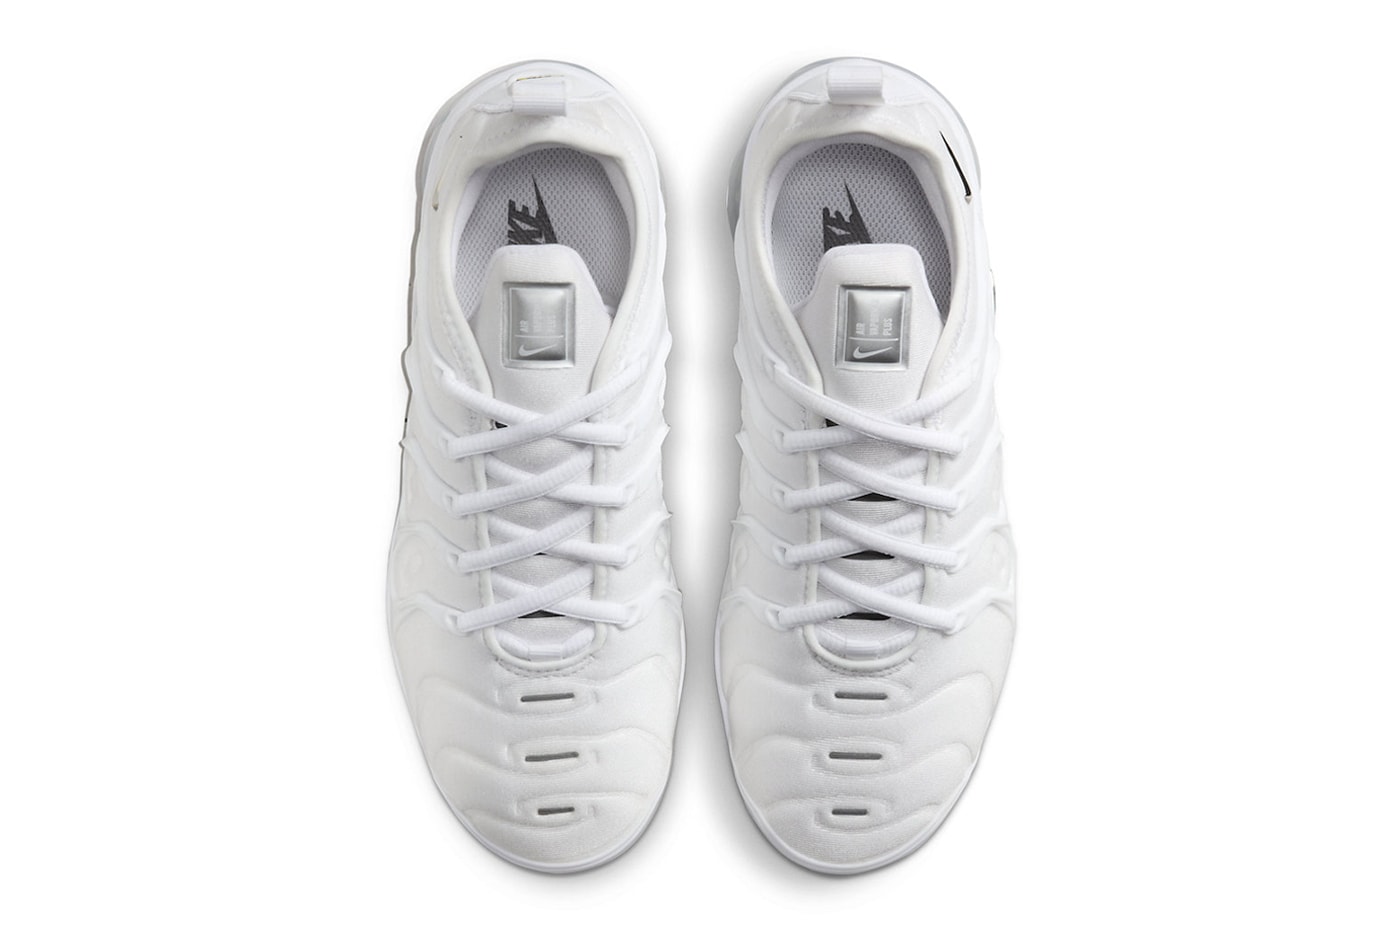 ナイキエアベイパーマックスプラスからシルバーのパーツが輝く新作 ホワイトクロームが登場 Official Look at the Nike Air VaporMax Plus "White Chrome" FQ8895-100 winter holiday 2023 air max triple white sole unit footwear sneaker